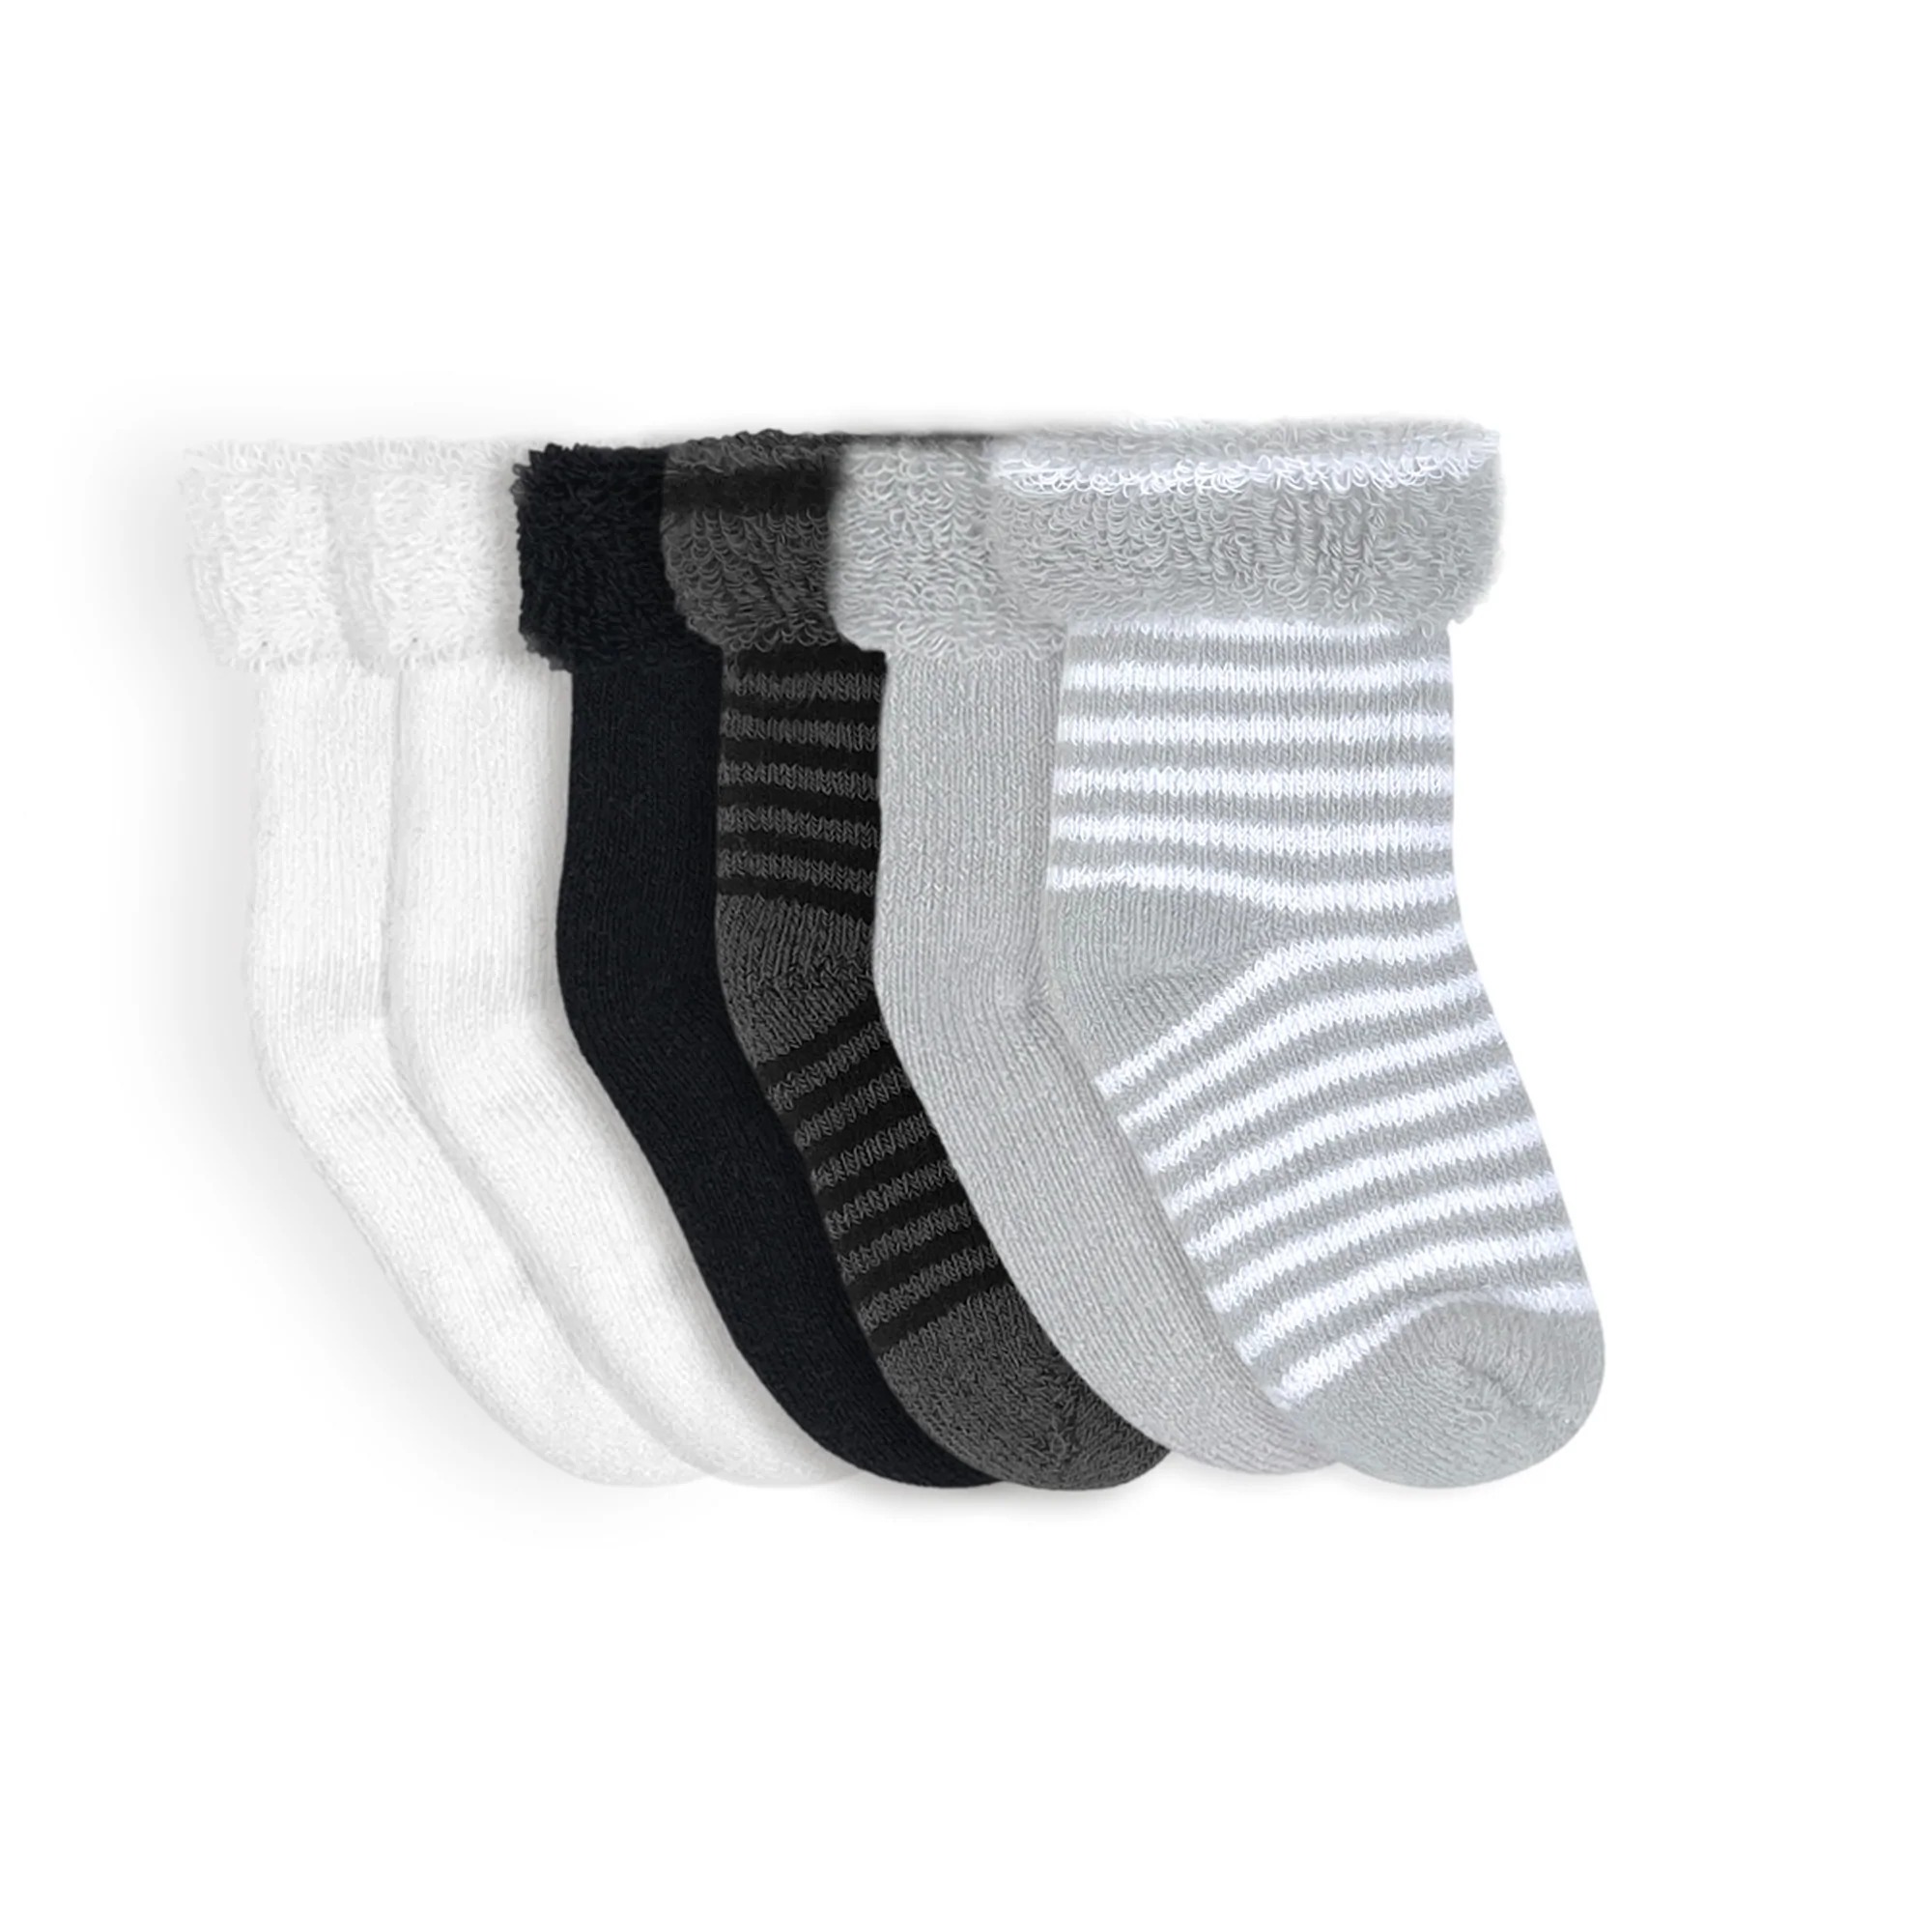 Kushies Terry Newborn Socks 6 Pack - Grey